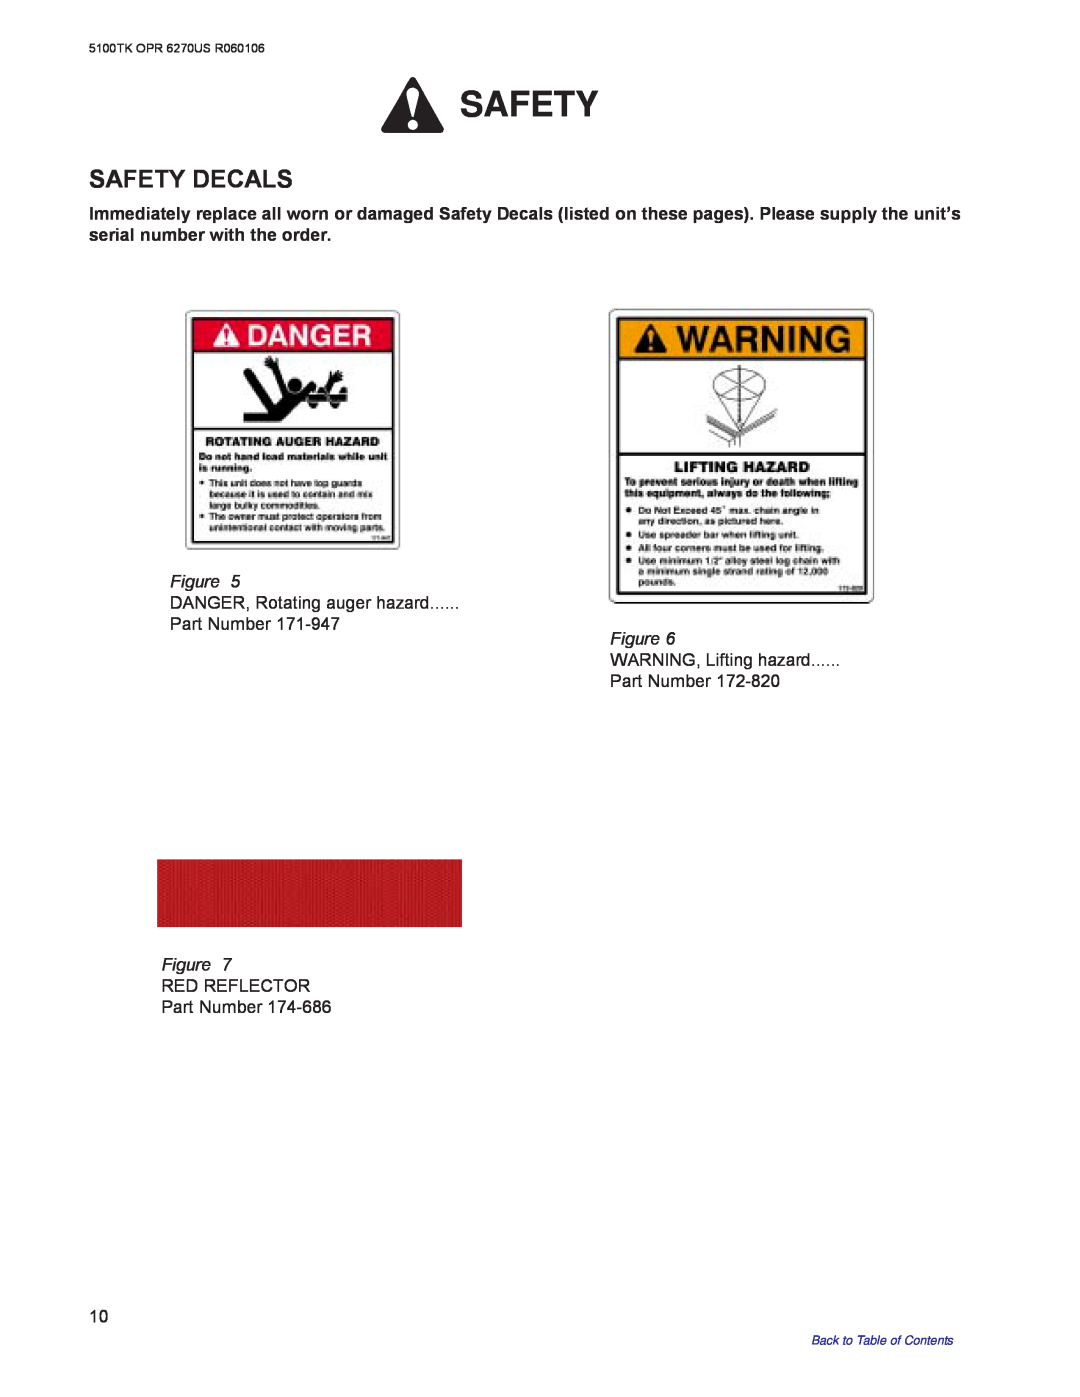 Kuhn Rikon 5100 Safety Decals, Figure DANGER, Rotating auger hazard Part Number, RED REFLECTOR Part Number 